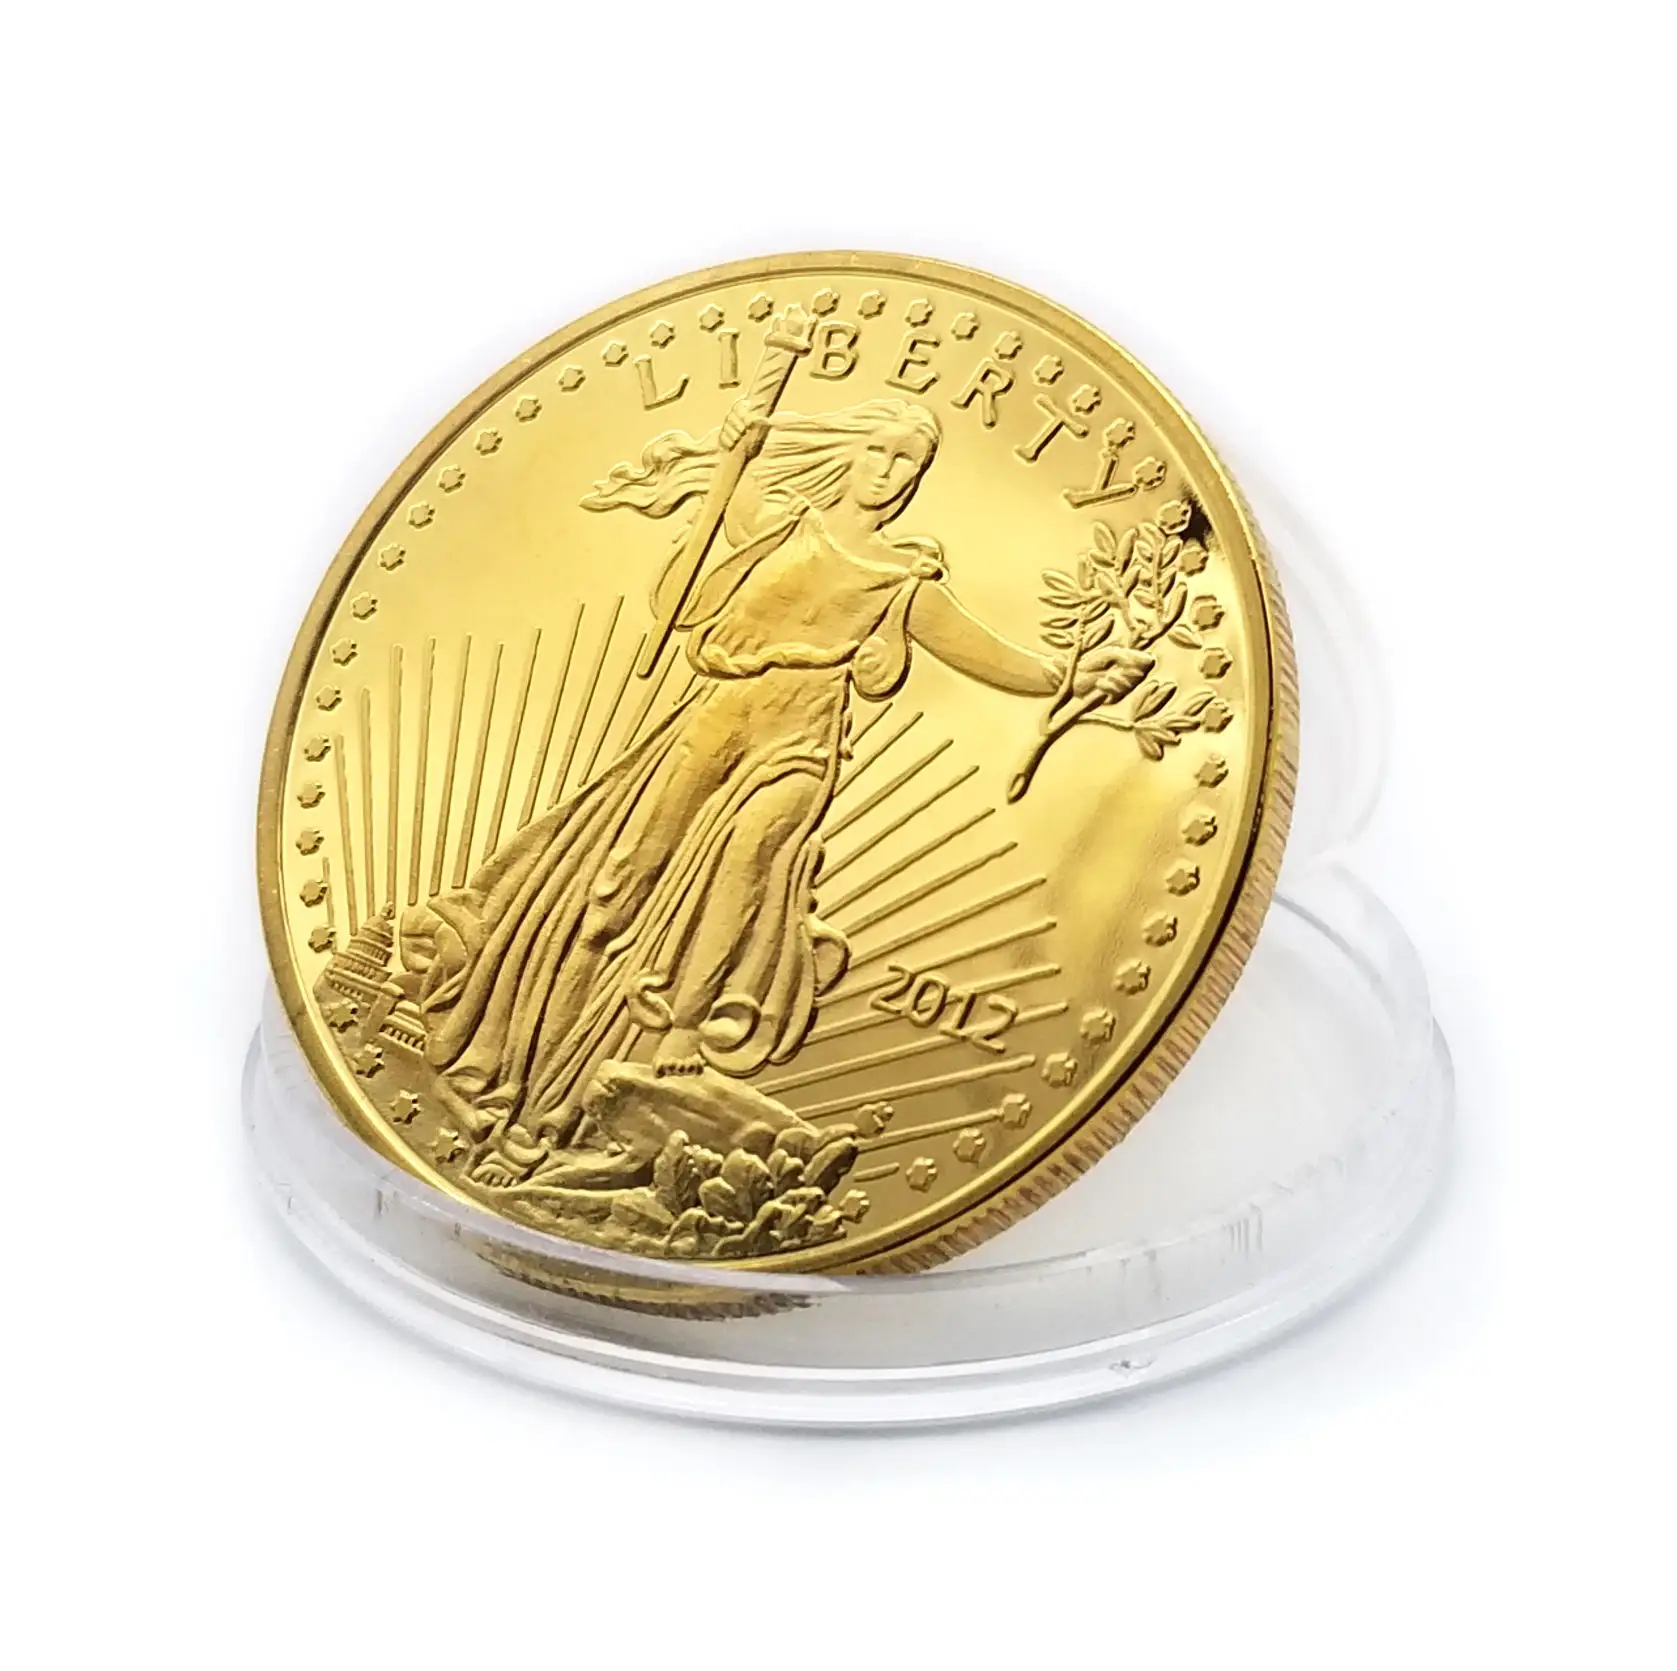 OEM quarter eagle 1 oz gold commemorative replica coin american tungsten gold silver double eagle us coin